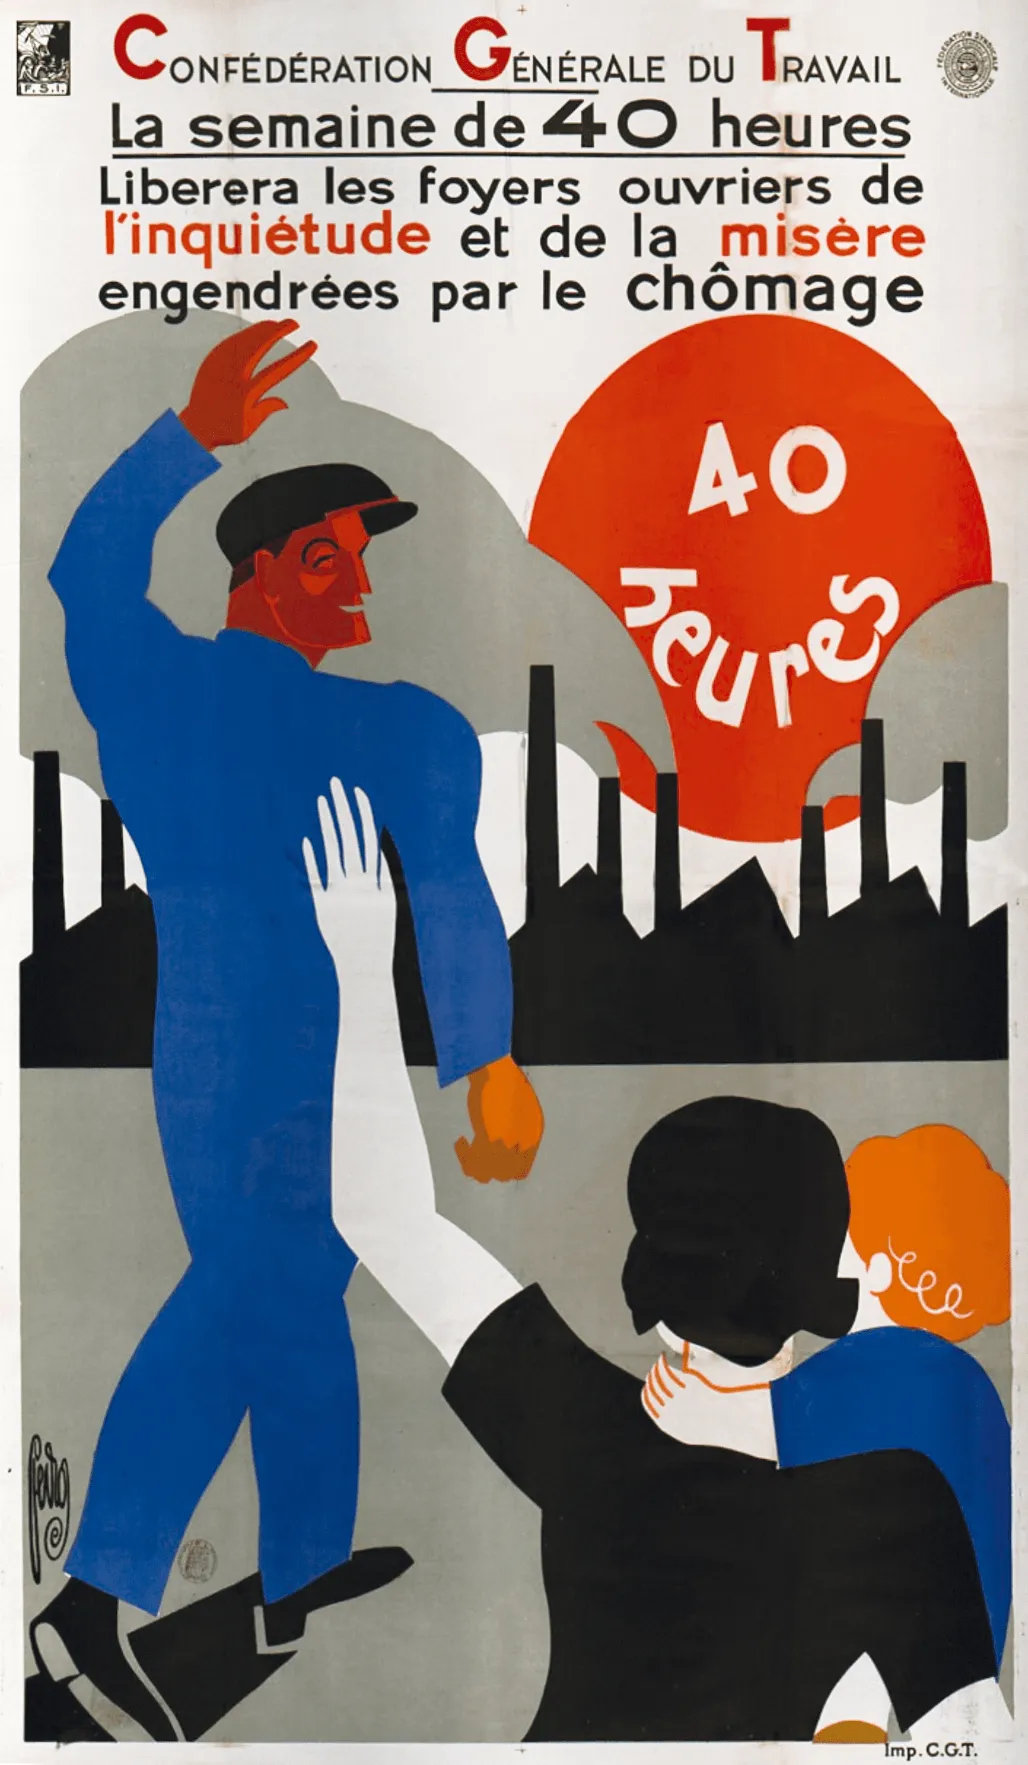 Affiche de la CGT, mai 1936. Un homme en bleu s'en va vers une usine en faisant un signe de la main à une femme et un enfant. Sur l'affiche est indiqué : Confédération générale du travail. La semaine de 40 heures liberera les foyers ouvriers de l'inquiétude et de la misère engendrées par le chomage.